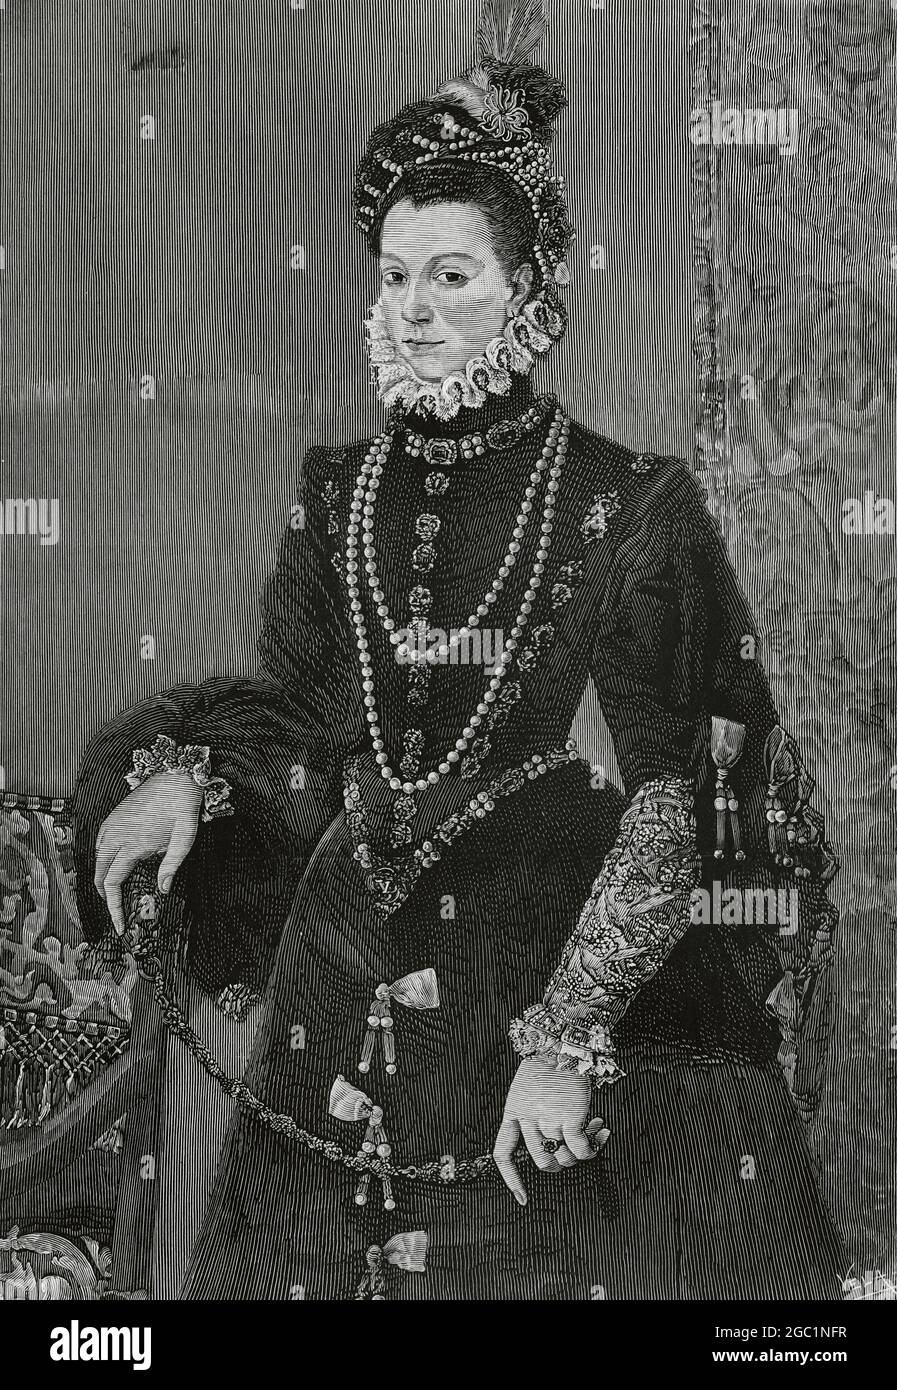 Elisabeth von Valois (1546-1568). Dritte Frau von König Philipp II. Von Spanien und Königin Gemahlin von Spanien. Stich von Vela nach einem Gemälde von Juan Pantoja de la Cruz. La Ilustración Española y Americana,1882. Stockfoto